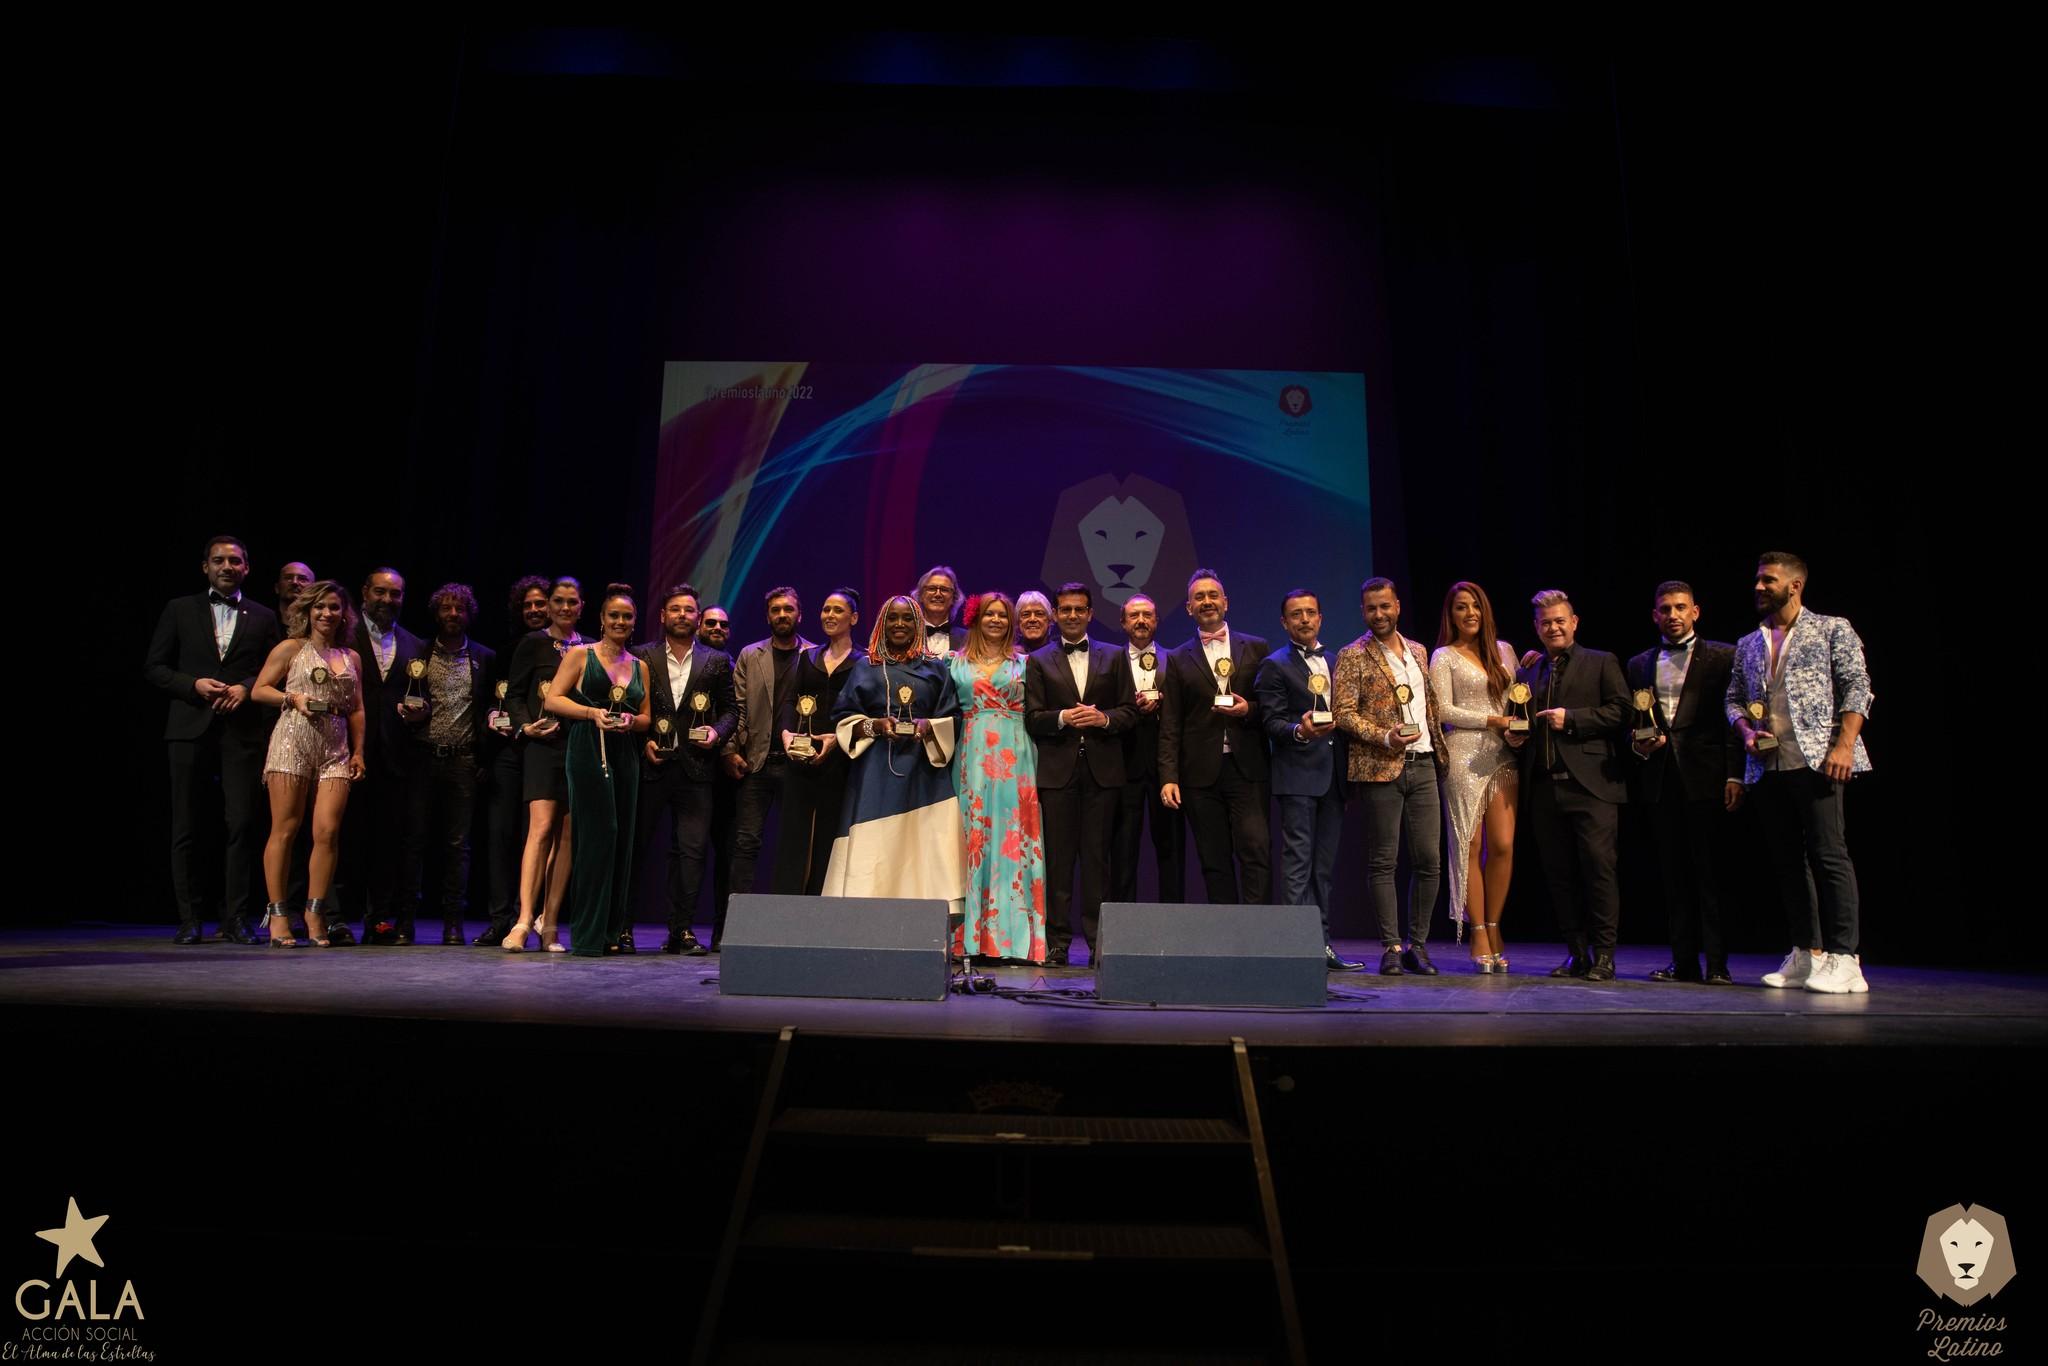 Alhaurín el Grande acoge mañana la celebración de la gala Premios Latino de la música en español en el teatro municipal Antonio Gala